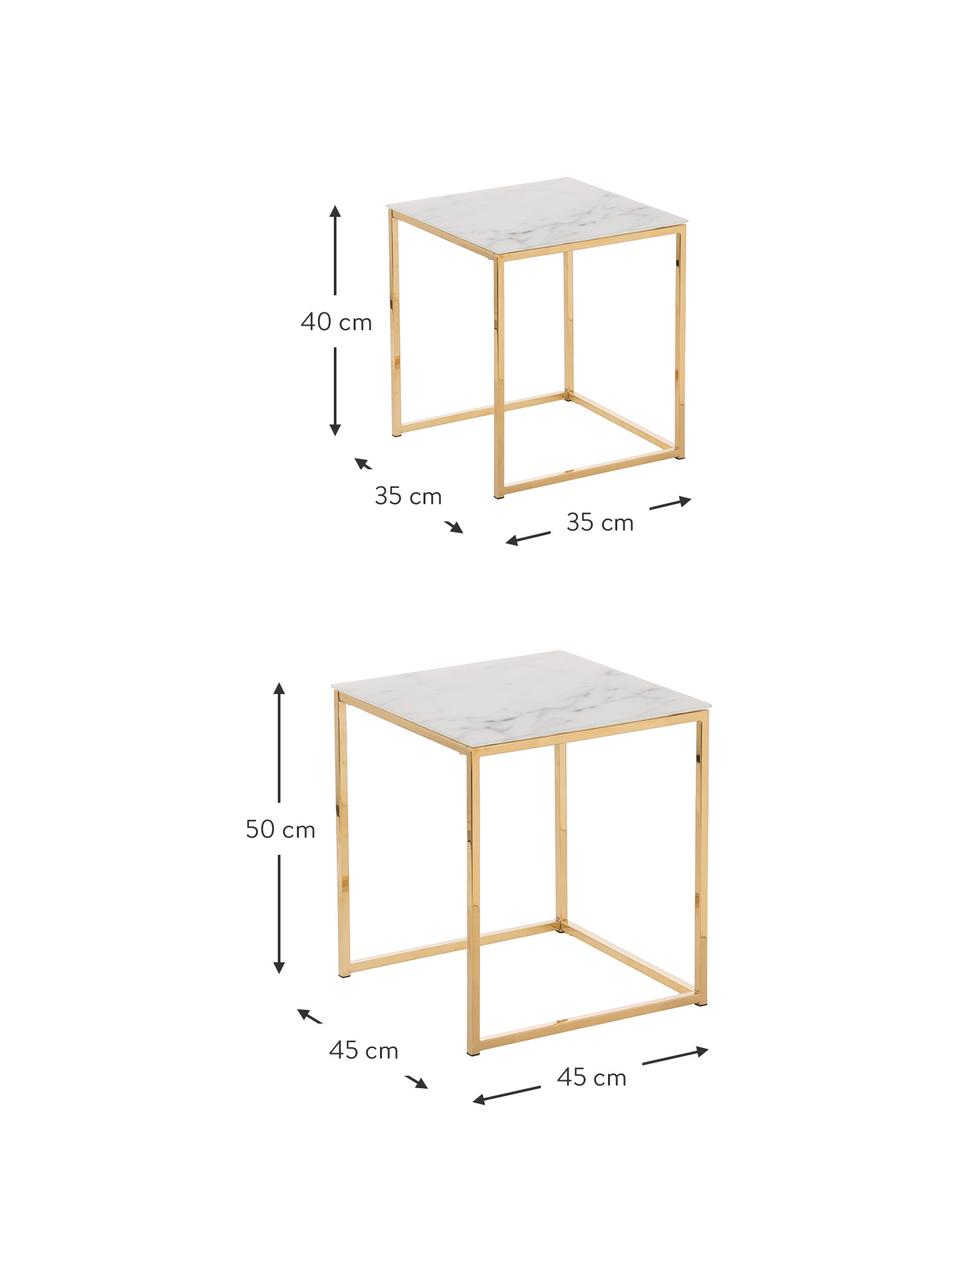 Set de mesas auxiliares Aruba, 2 pzas., tablero de cristal en aspecto mármol, Tablero: vidrio, Estructura: metal recubierto, Mármol blanco mate, dorado, Set de diferentes tamaños